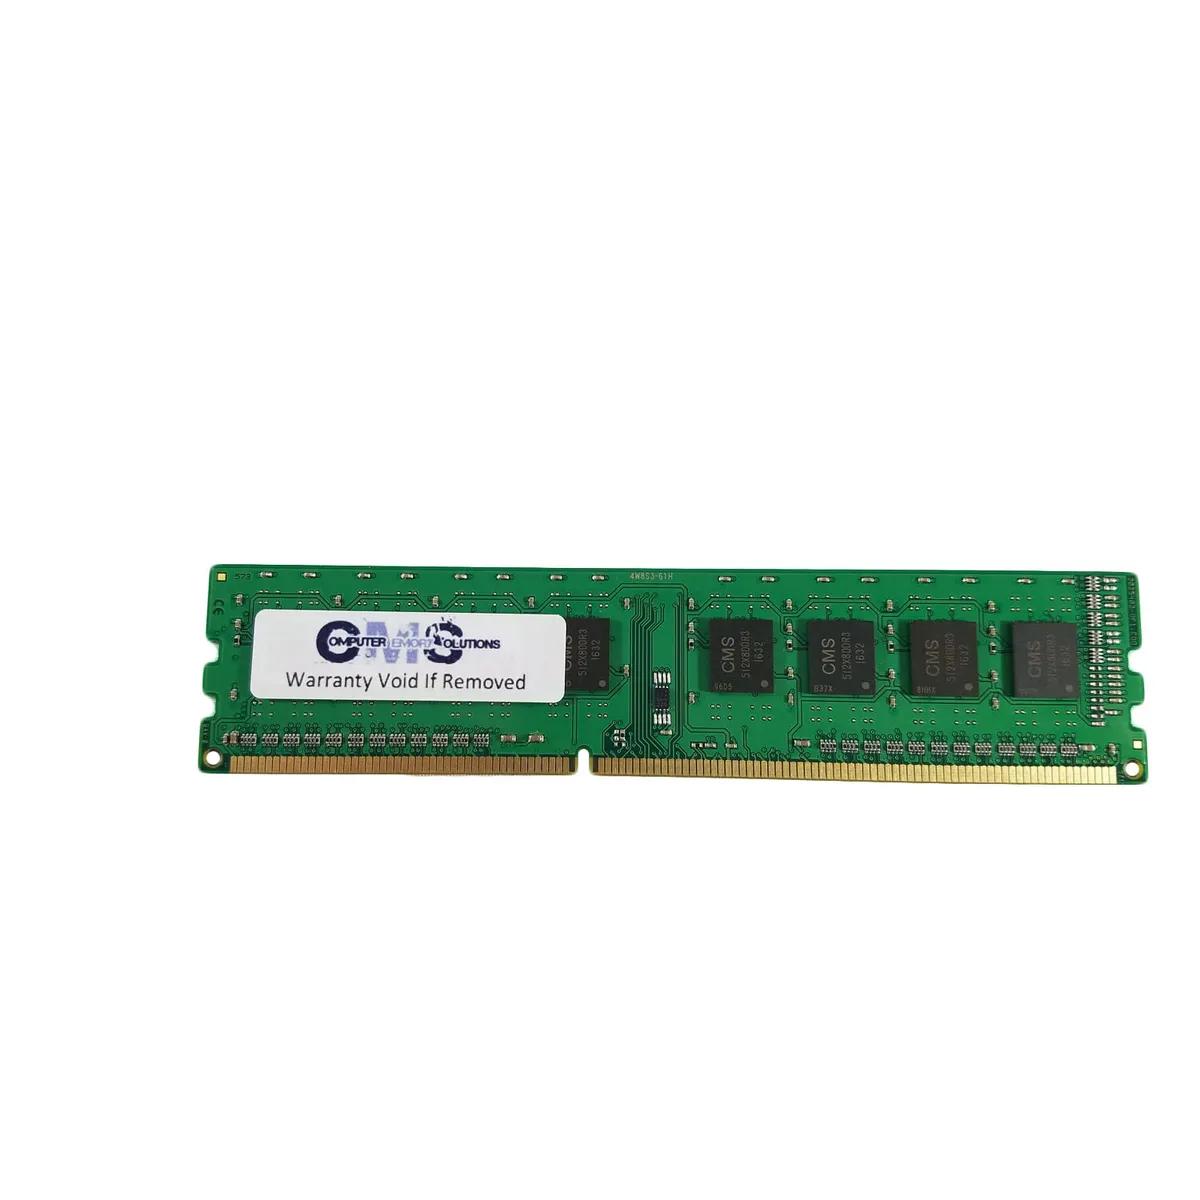 hewlett-packard hp compaq elite 8300 sff ram - What type of RAM does the HP Compaq 8100 Elite SFF use